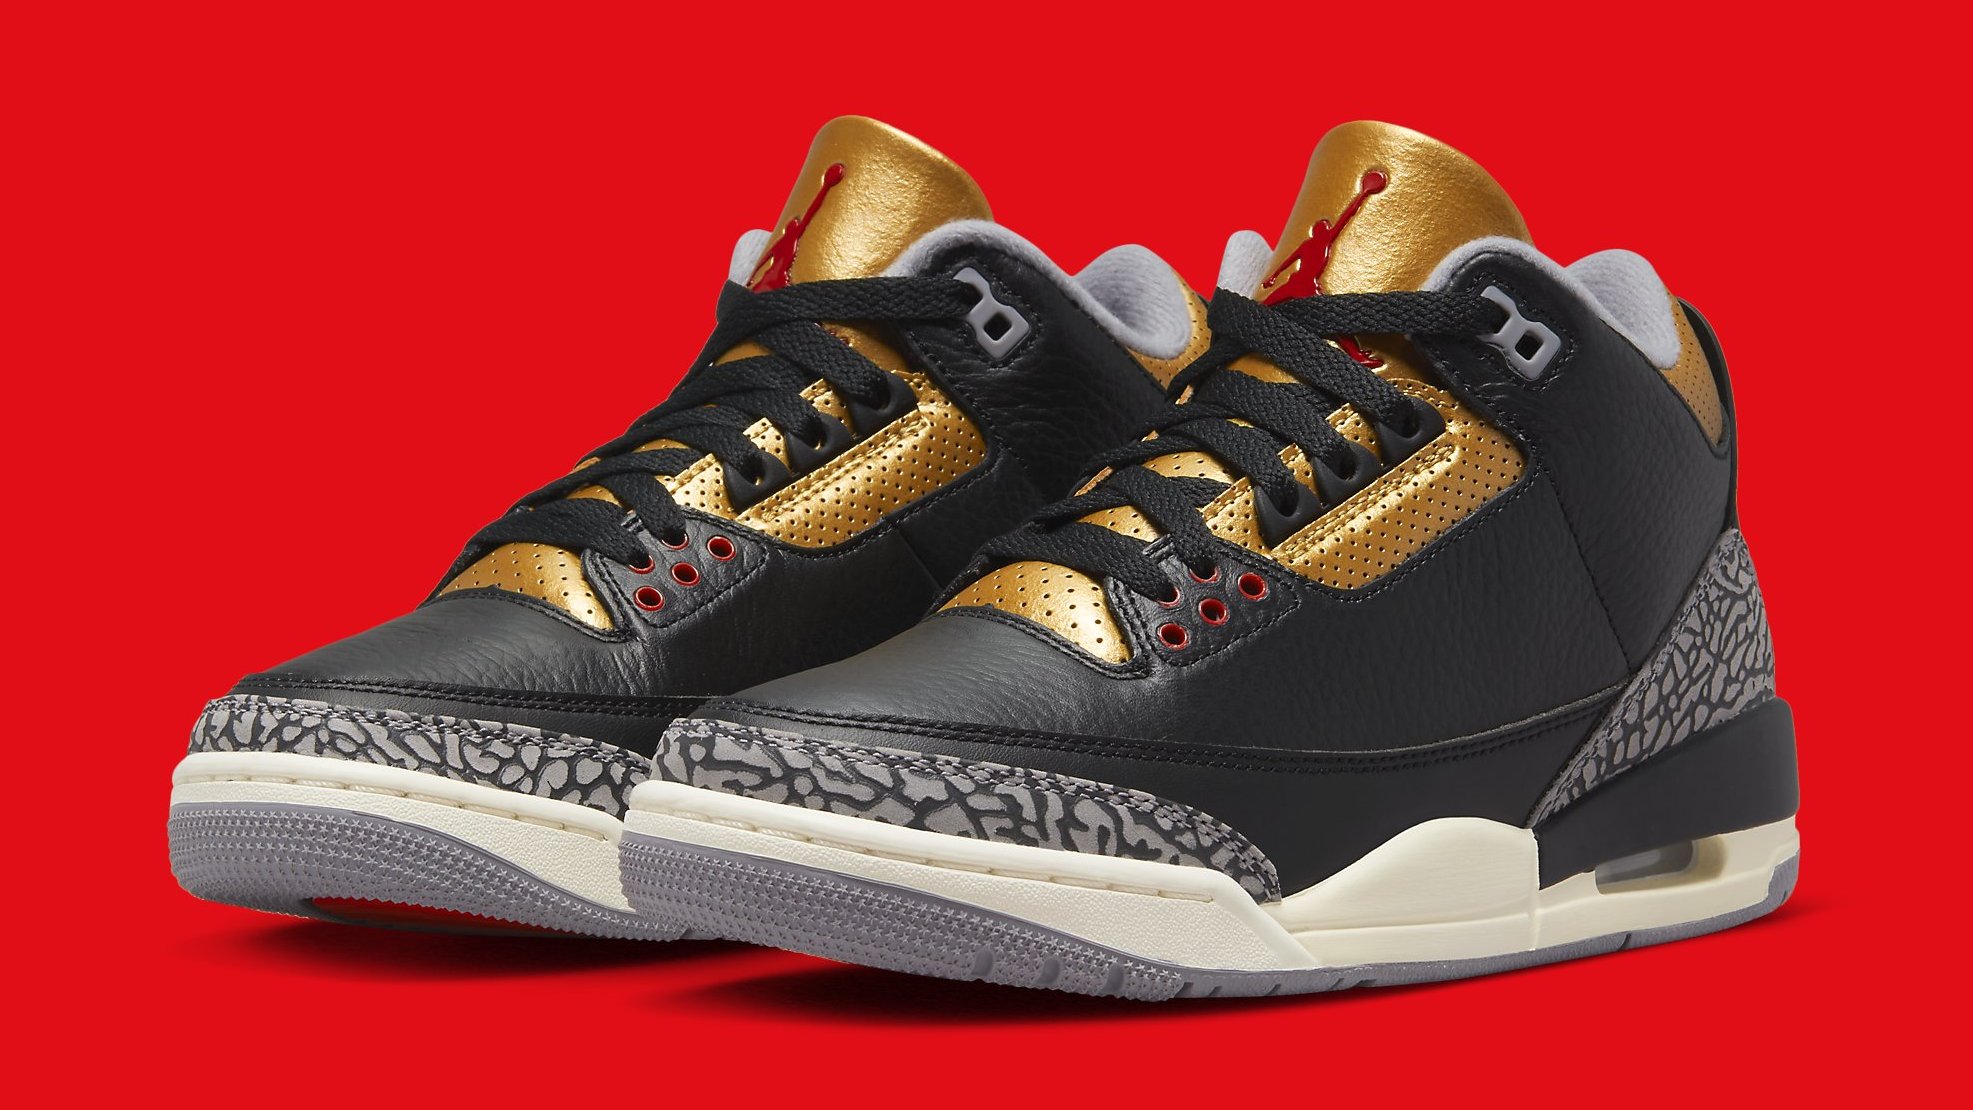 Black Gold' Air Jordan 3 Drops in October | Complex